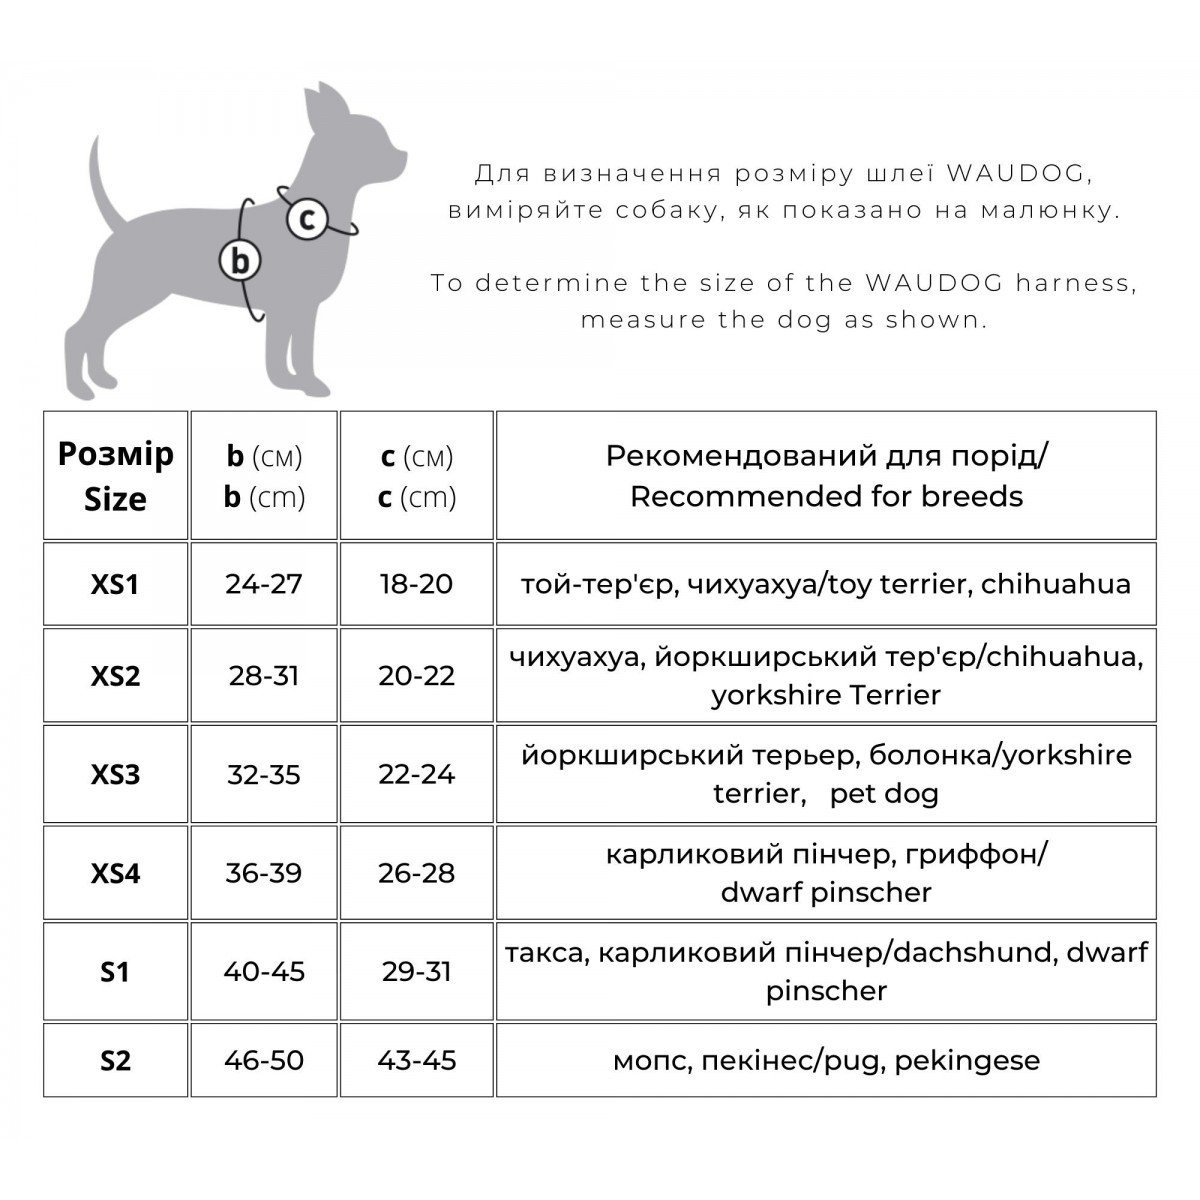 Шлея для собак мягкая Waudog Clothes с QR паспортом Авокадо, S2, 46-50х43-45 см - фото 4